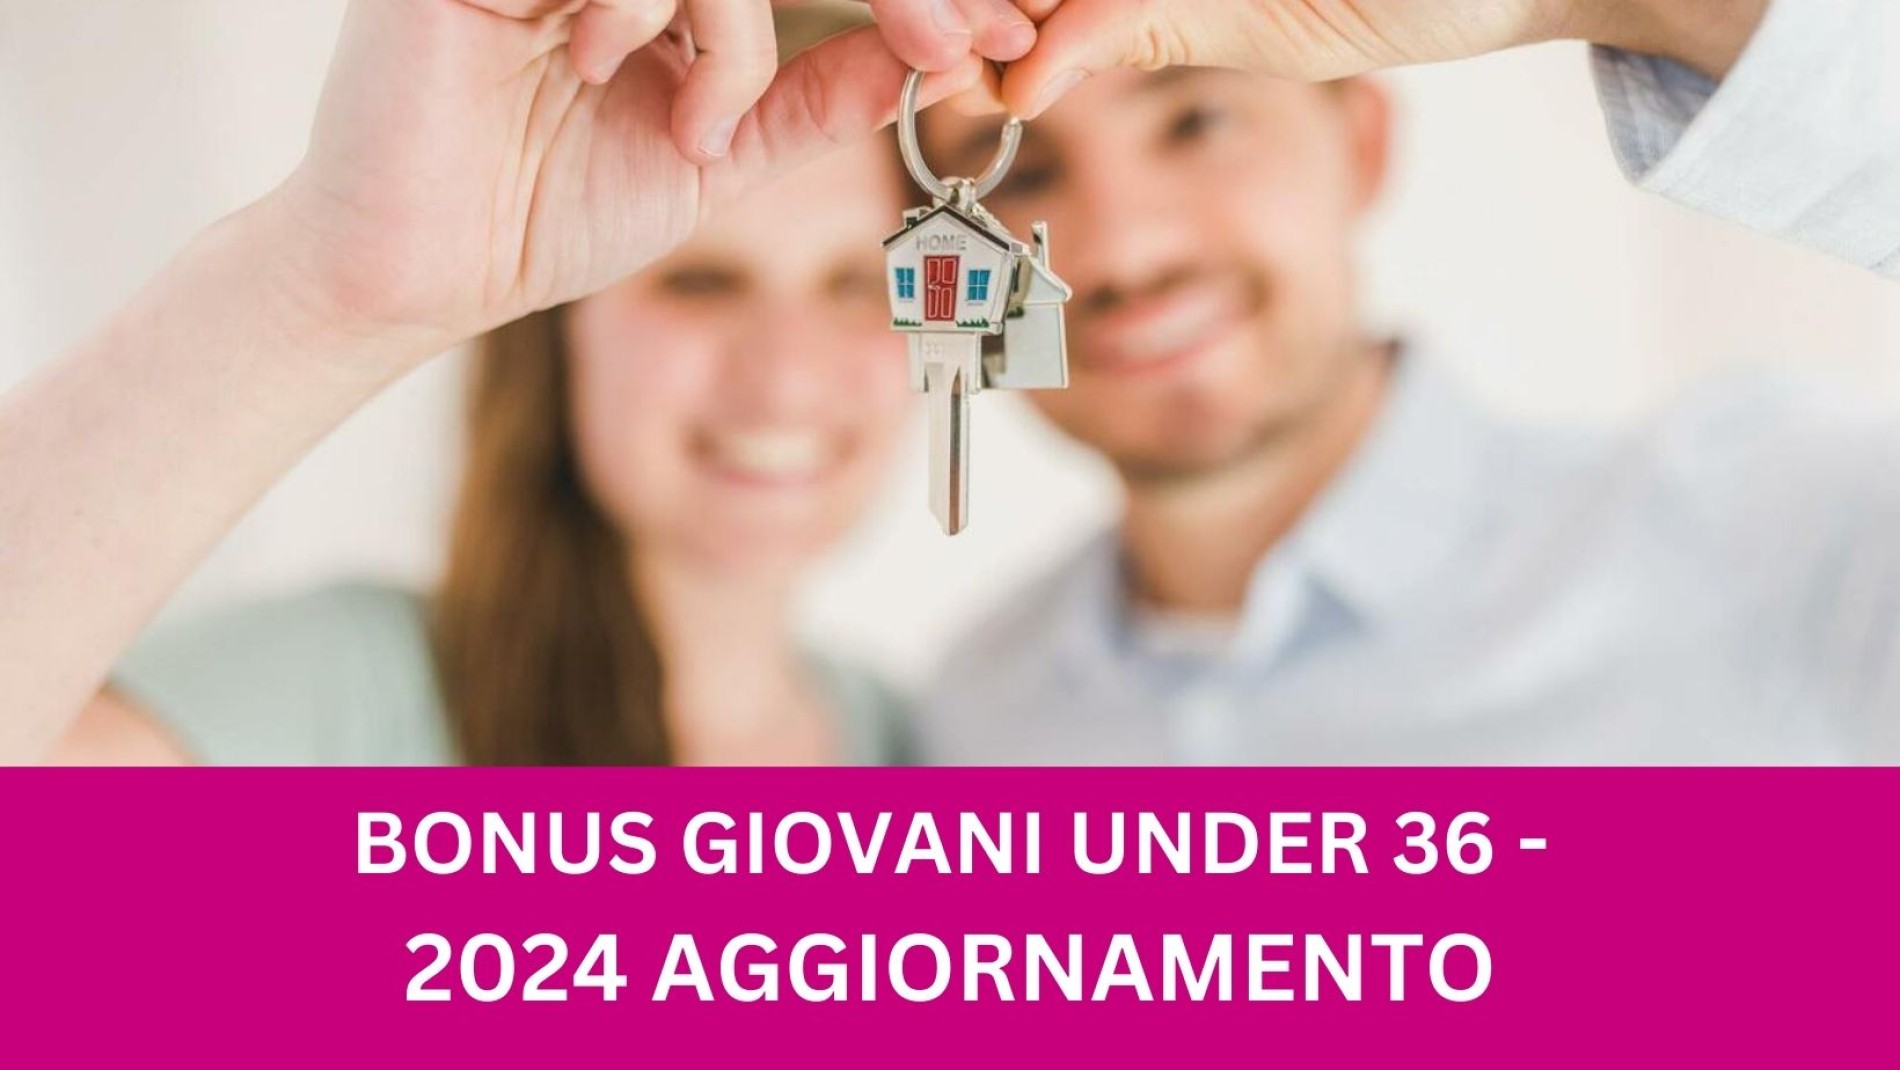 2024 AGGIORNAMENTO - BONUS GIOVANI UNDER 36